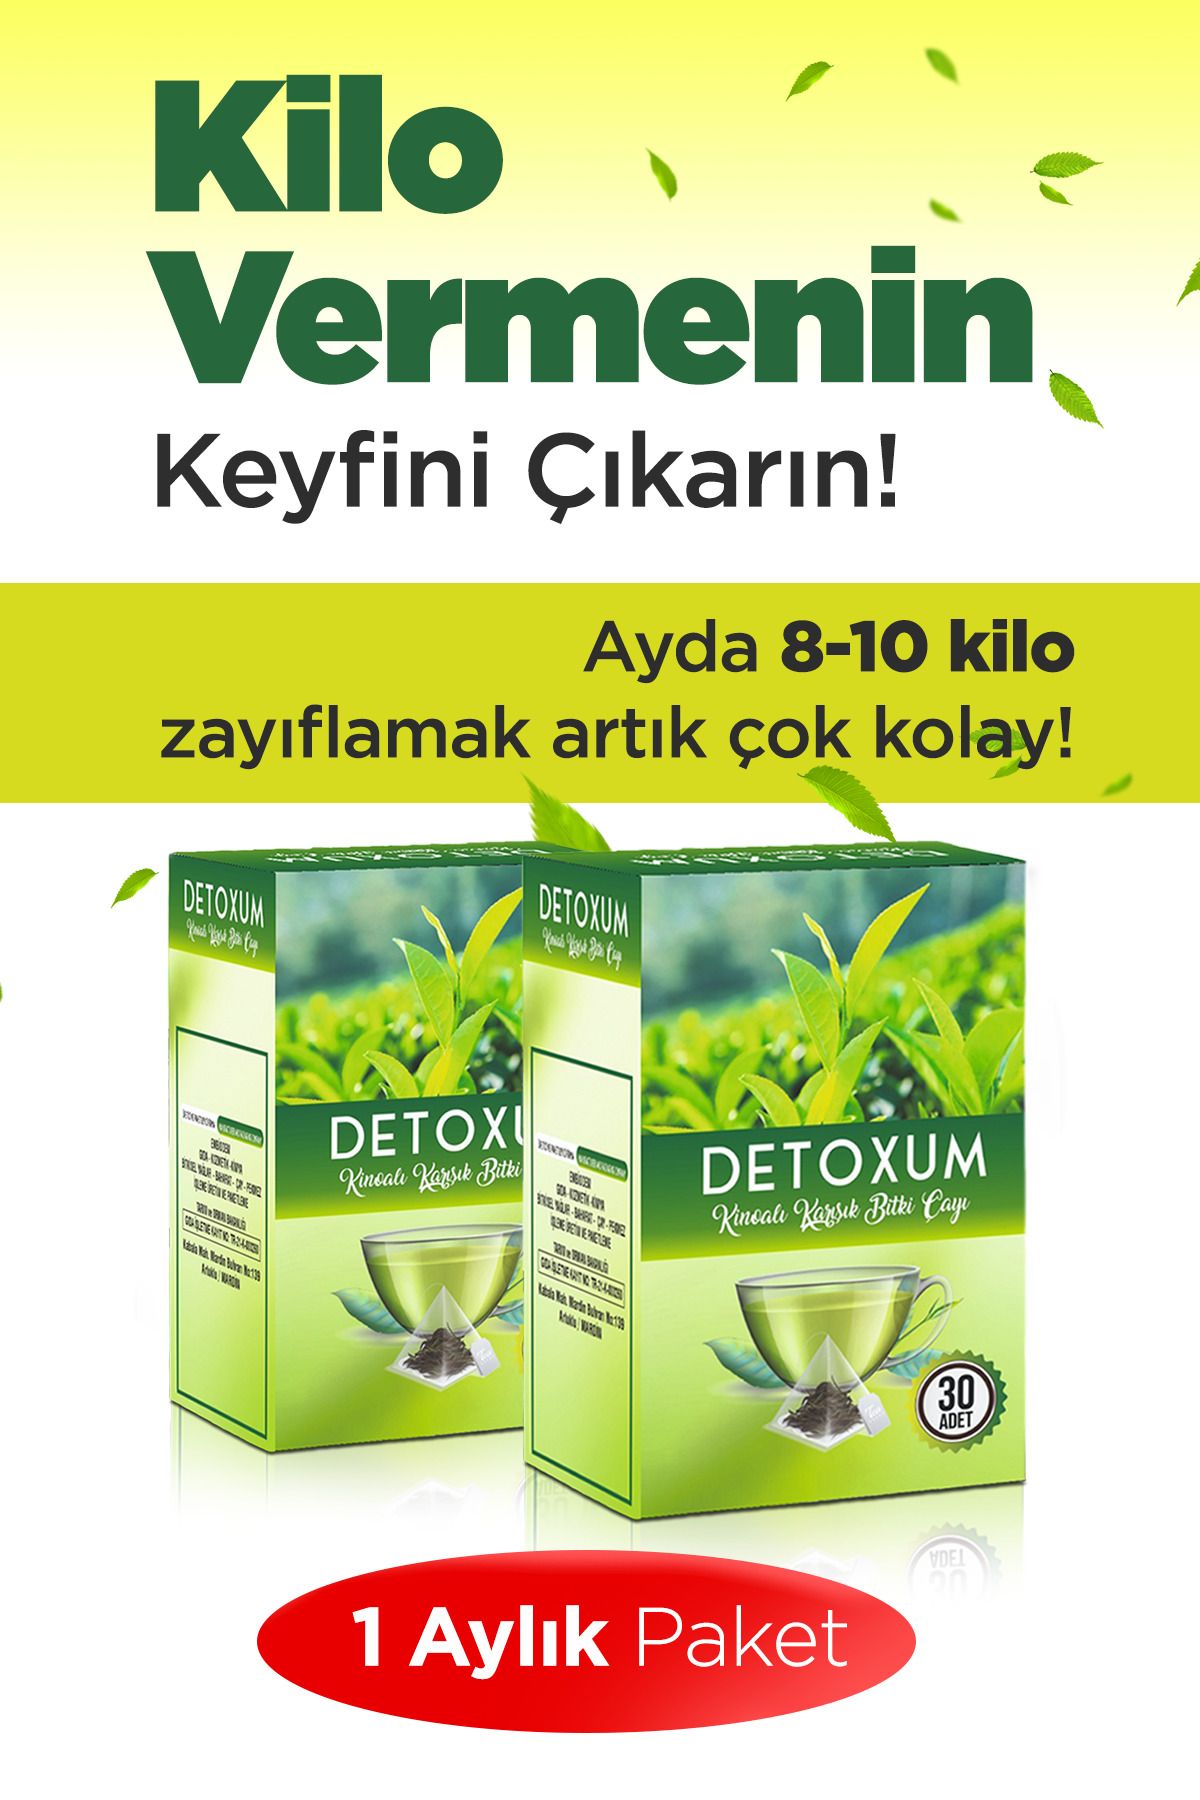 Detoxum Zayıflama Destekleyici Form Çayı Detox Çayı ( 2 Li Set)